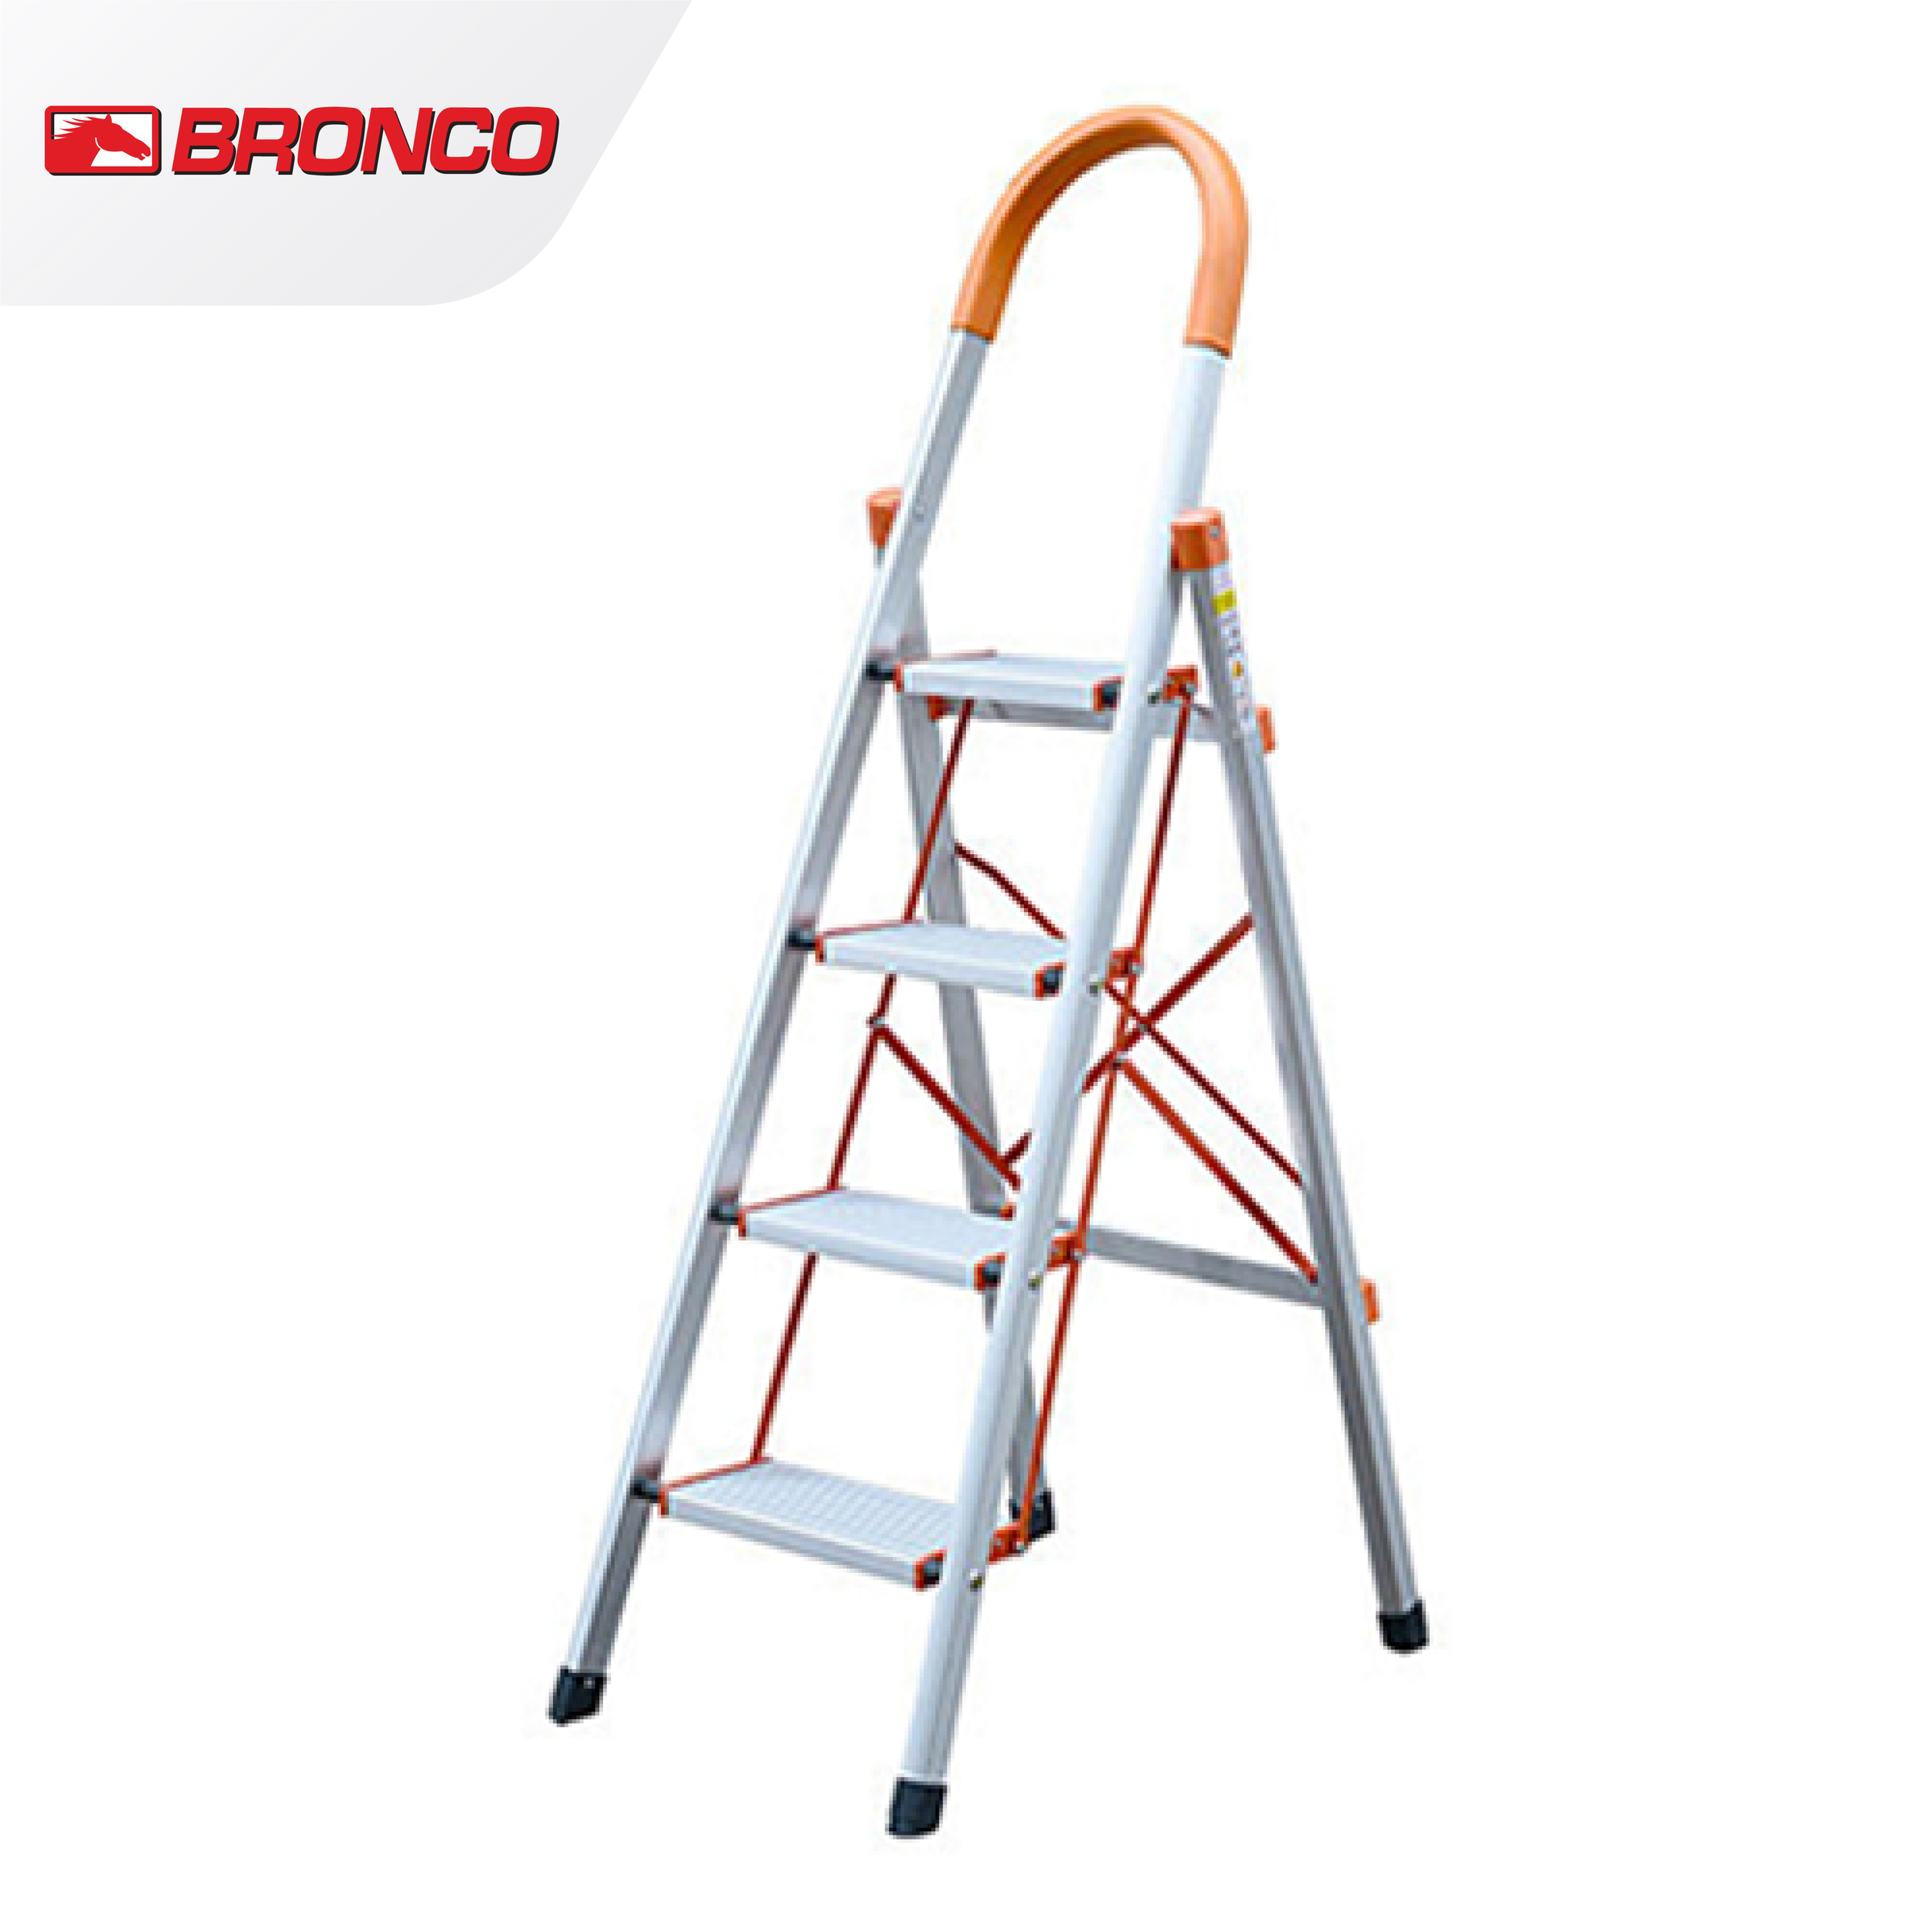 Bronco Premium Aluminum Ladder 4 steps